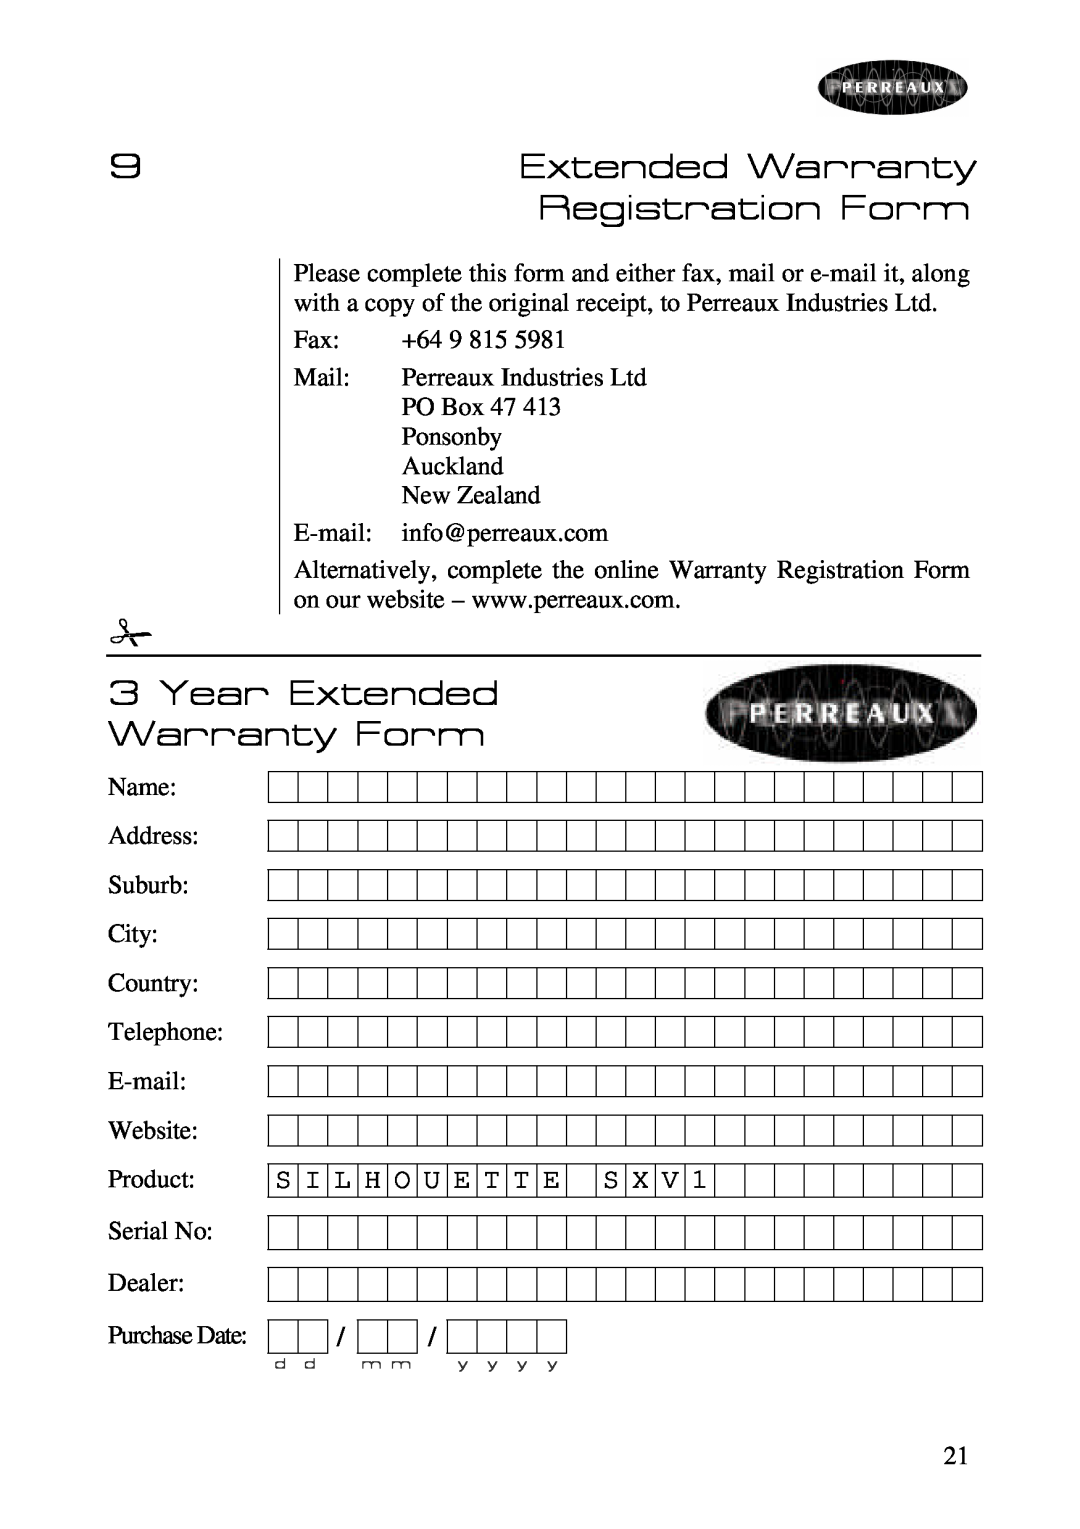 Perreaux SXV1 owner manual Registration Form, Year Extended Warranty Form, S I L H O U E T T E S X V 